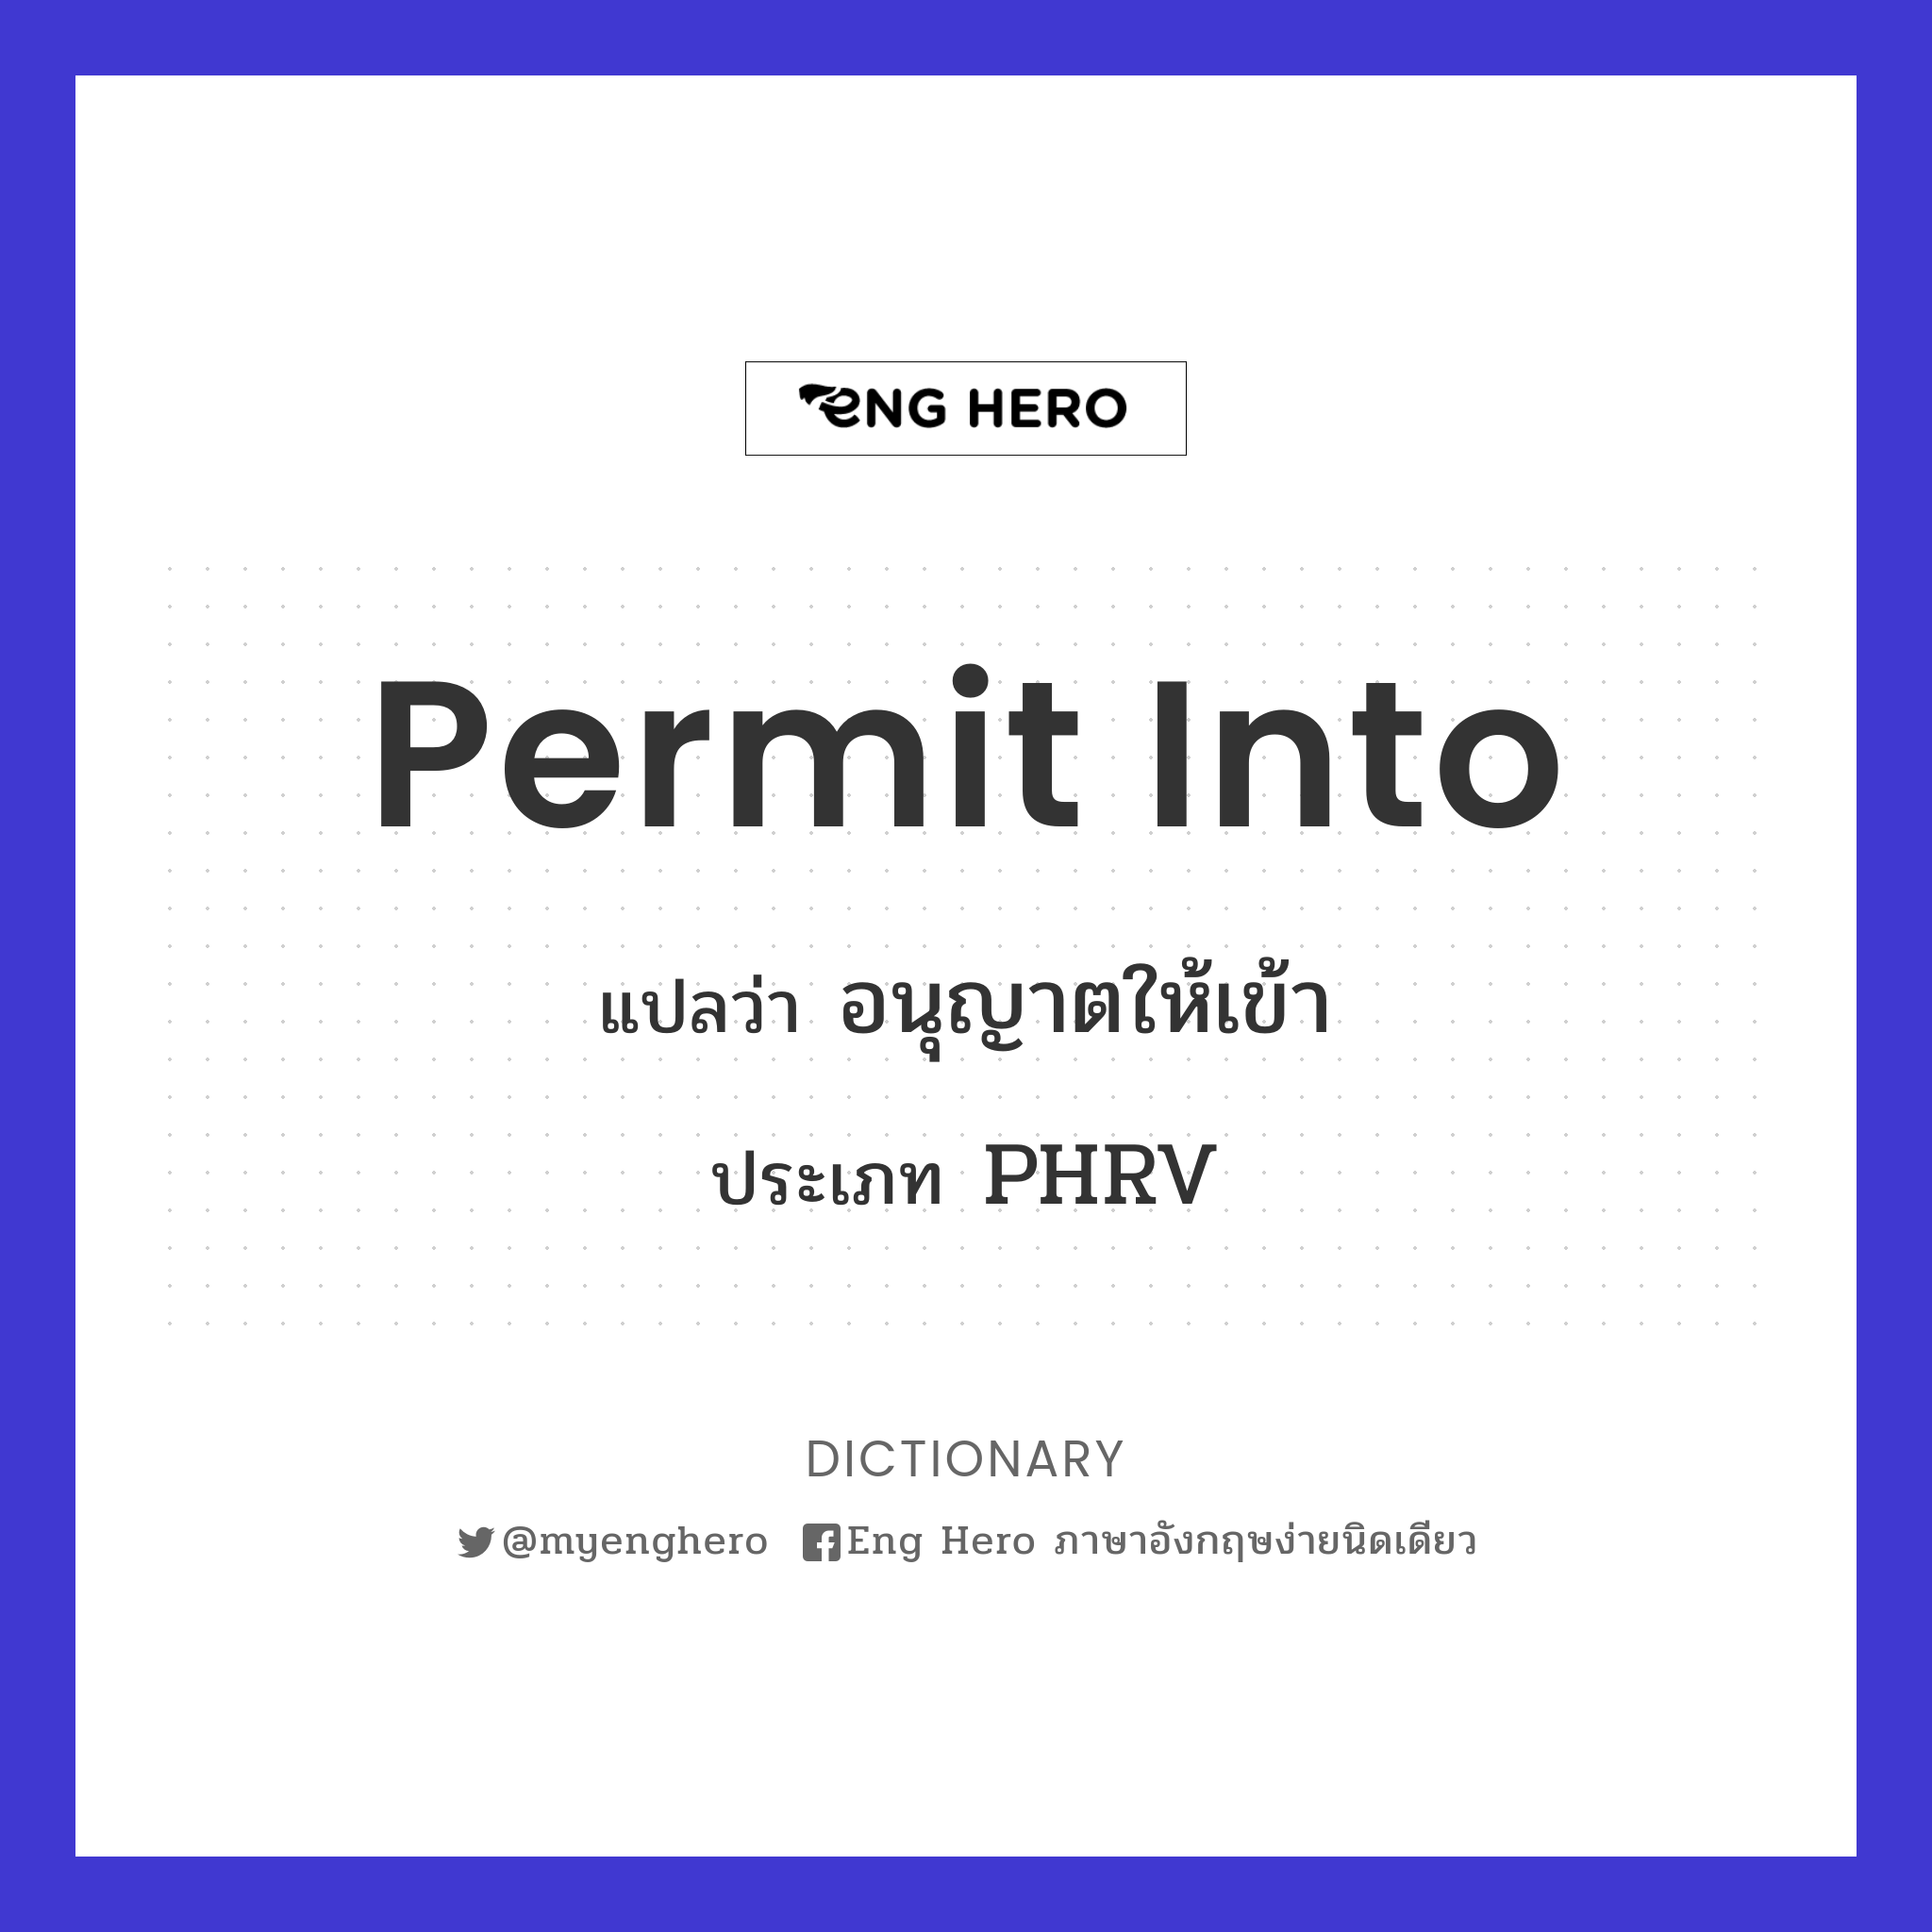 permit into